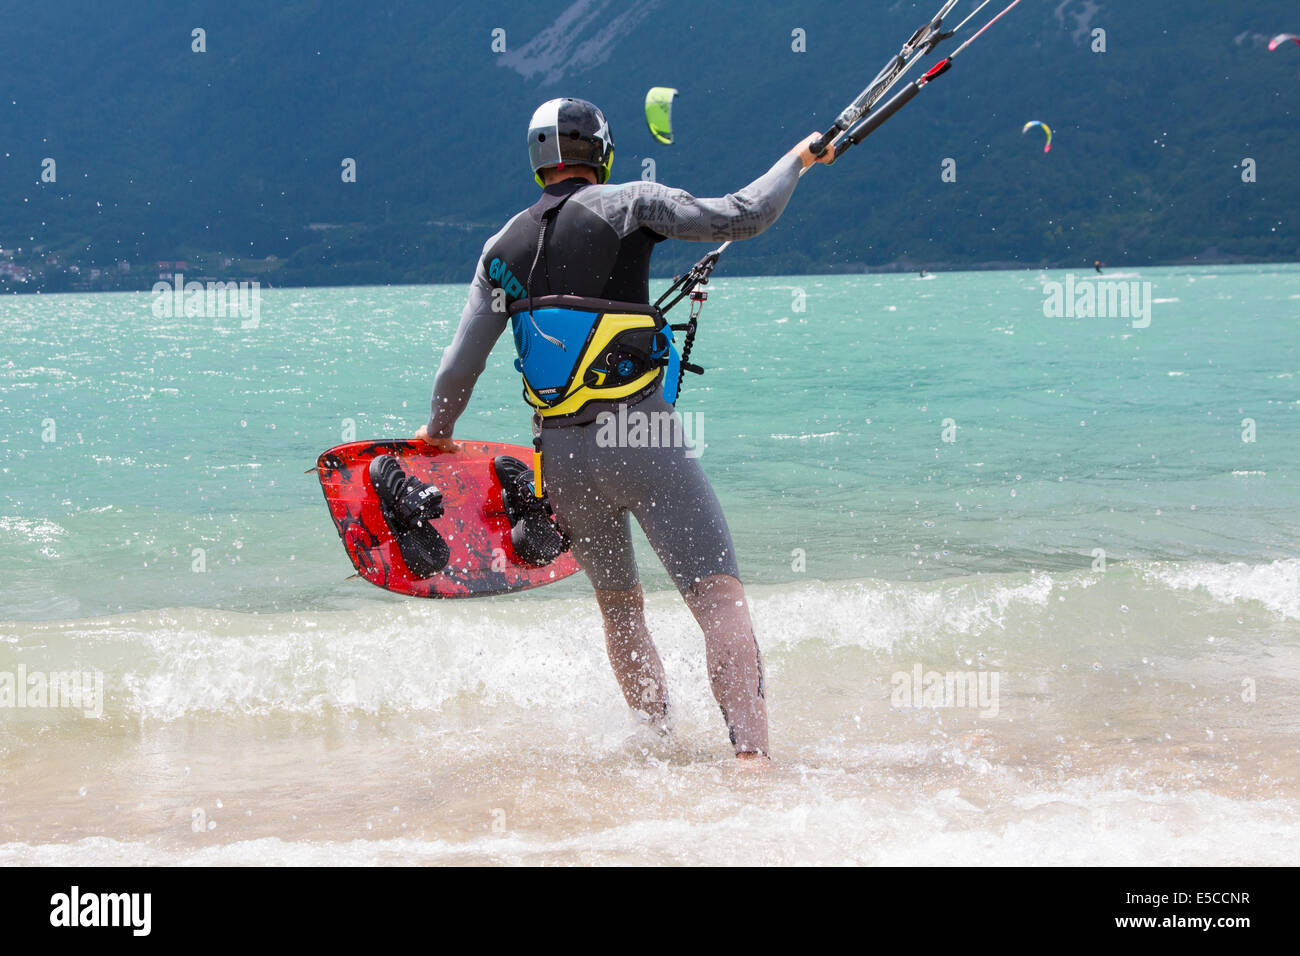 Lac DE SANTA CROCE, ITALIE - 13 juillet 2014 : Kitesurfer lance son cerf-volant dans le lac de Santa Croce Banque D'Images